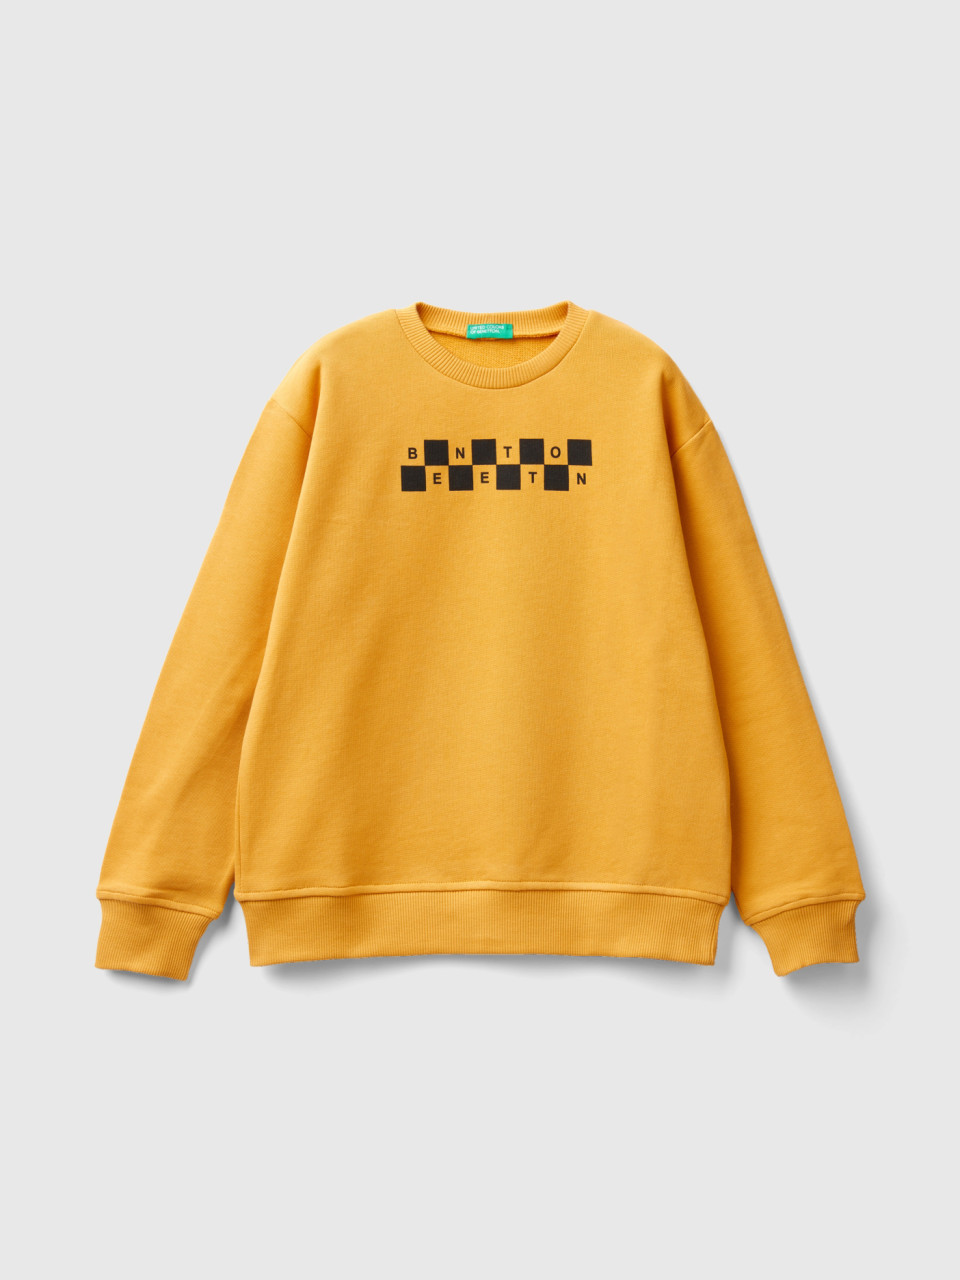 Benetton, Sweatshirt With Logo Print, Yellow, Kids